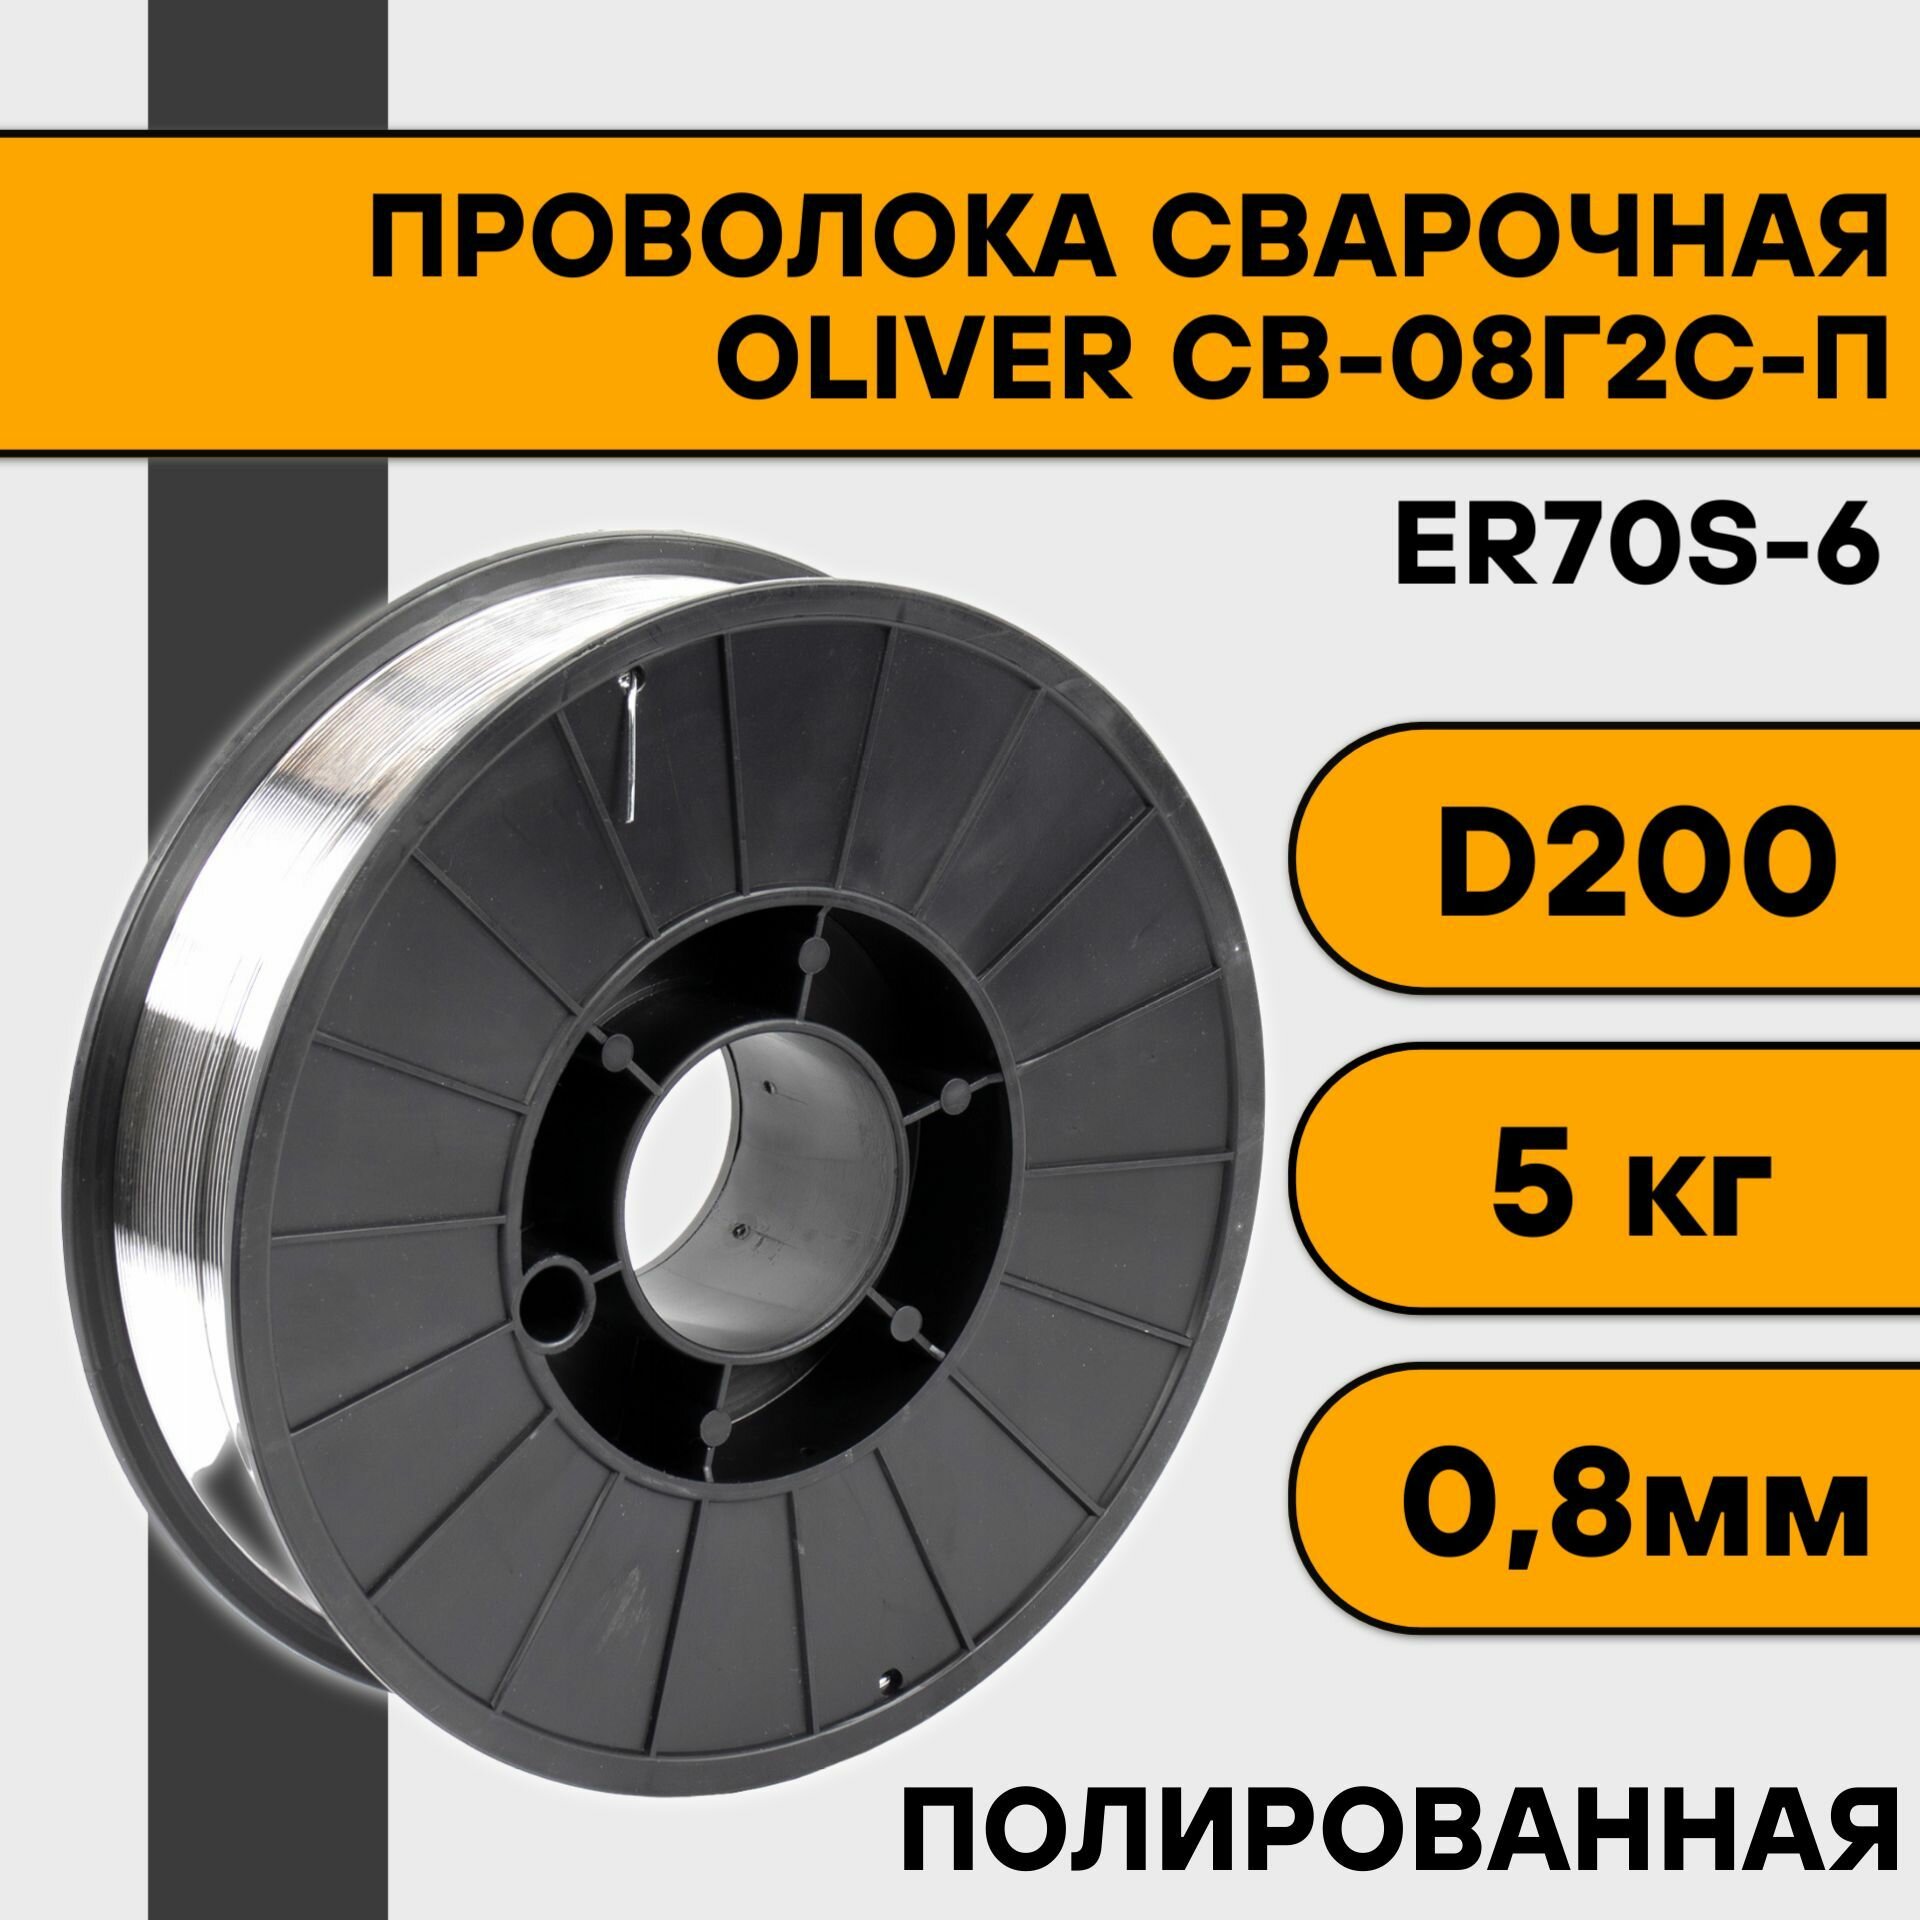 Проволока сварочная СВ-08Г2С-П/ER70S-6 ф 12 мм (15 кг) BS-300 кассета OLIVER (полированная)